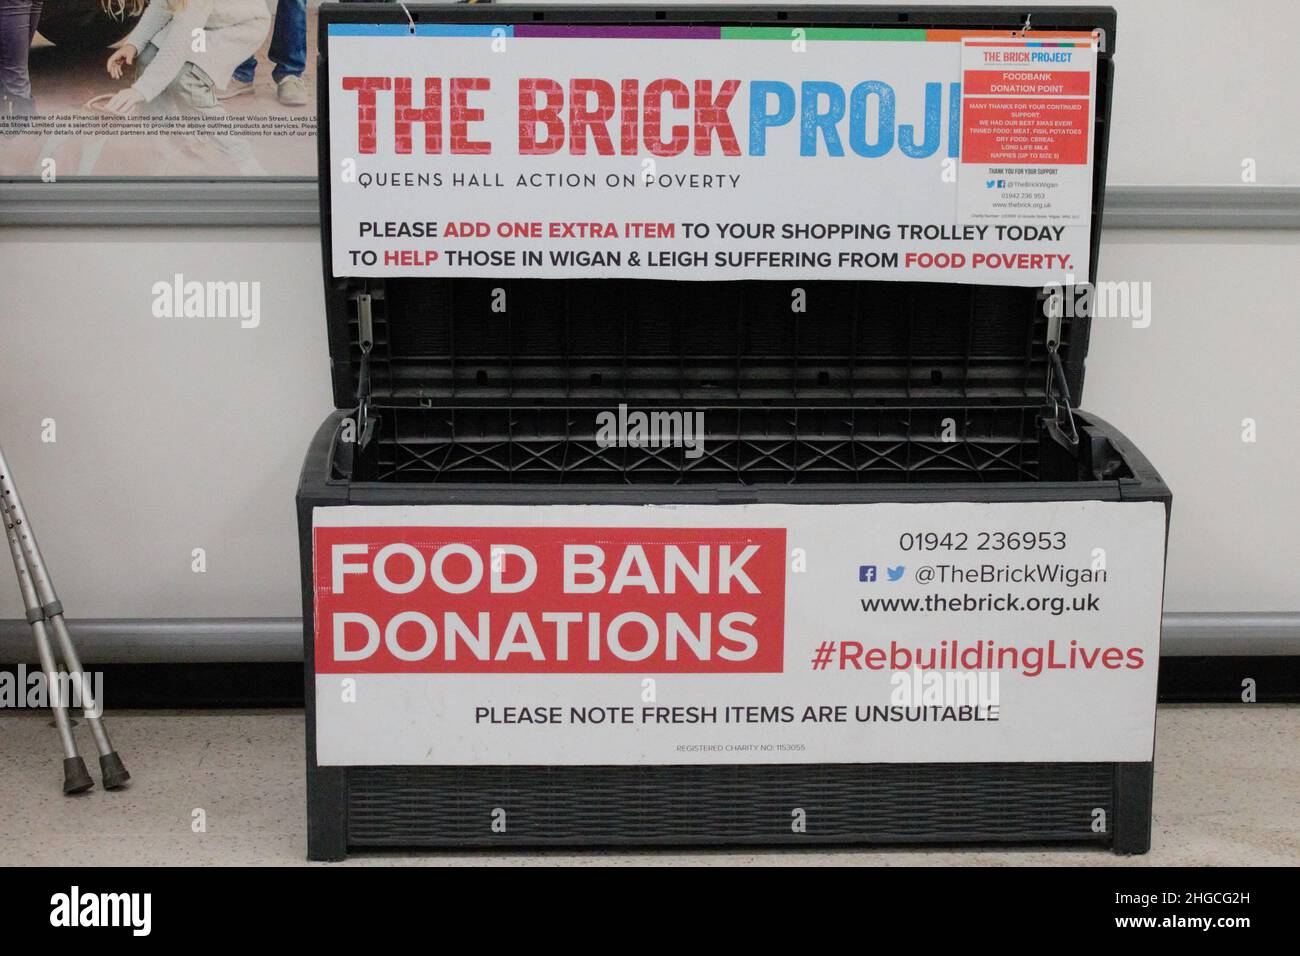 Boîte de dons de la banque alimentaire.Concept de pauvreté alimentaire.Wigan, Manchester, Royaume-Uni Banque D'Images